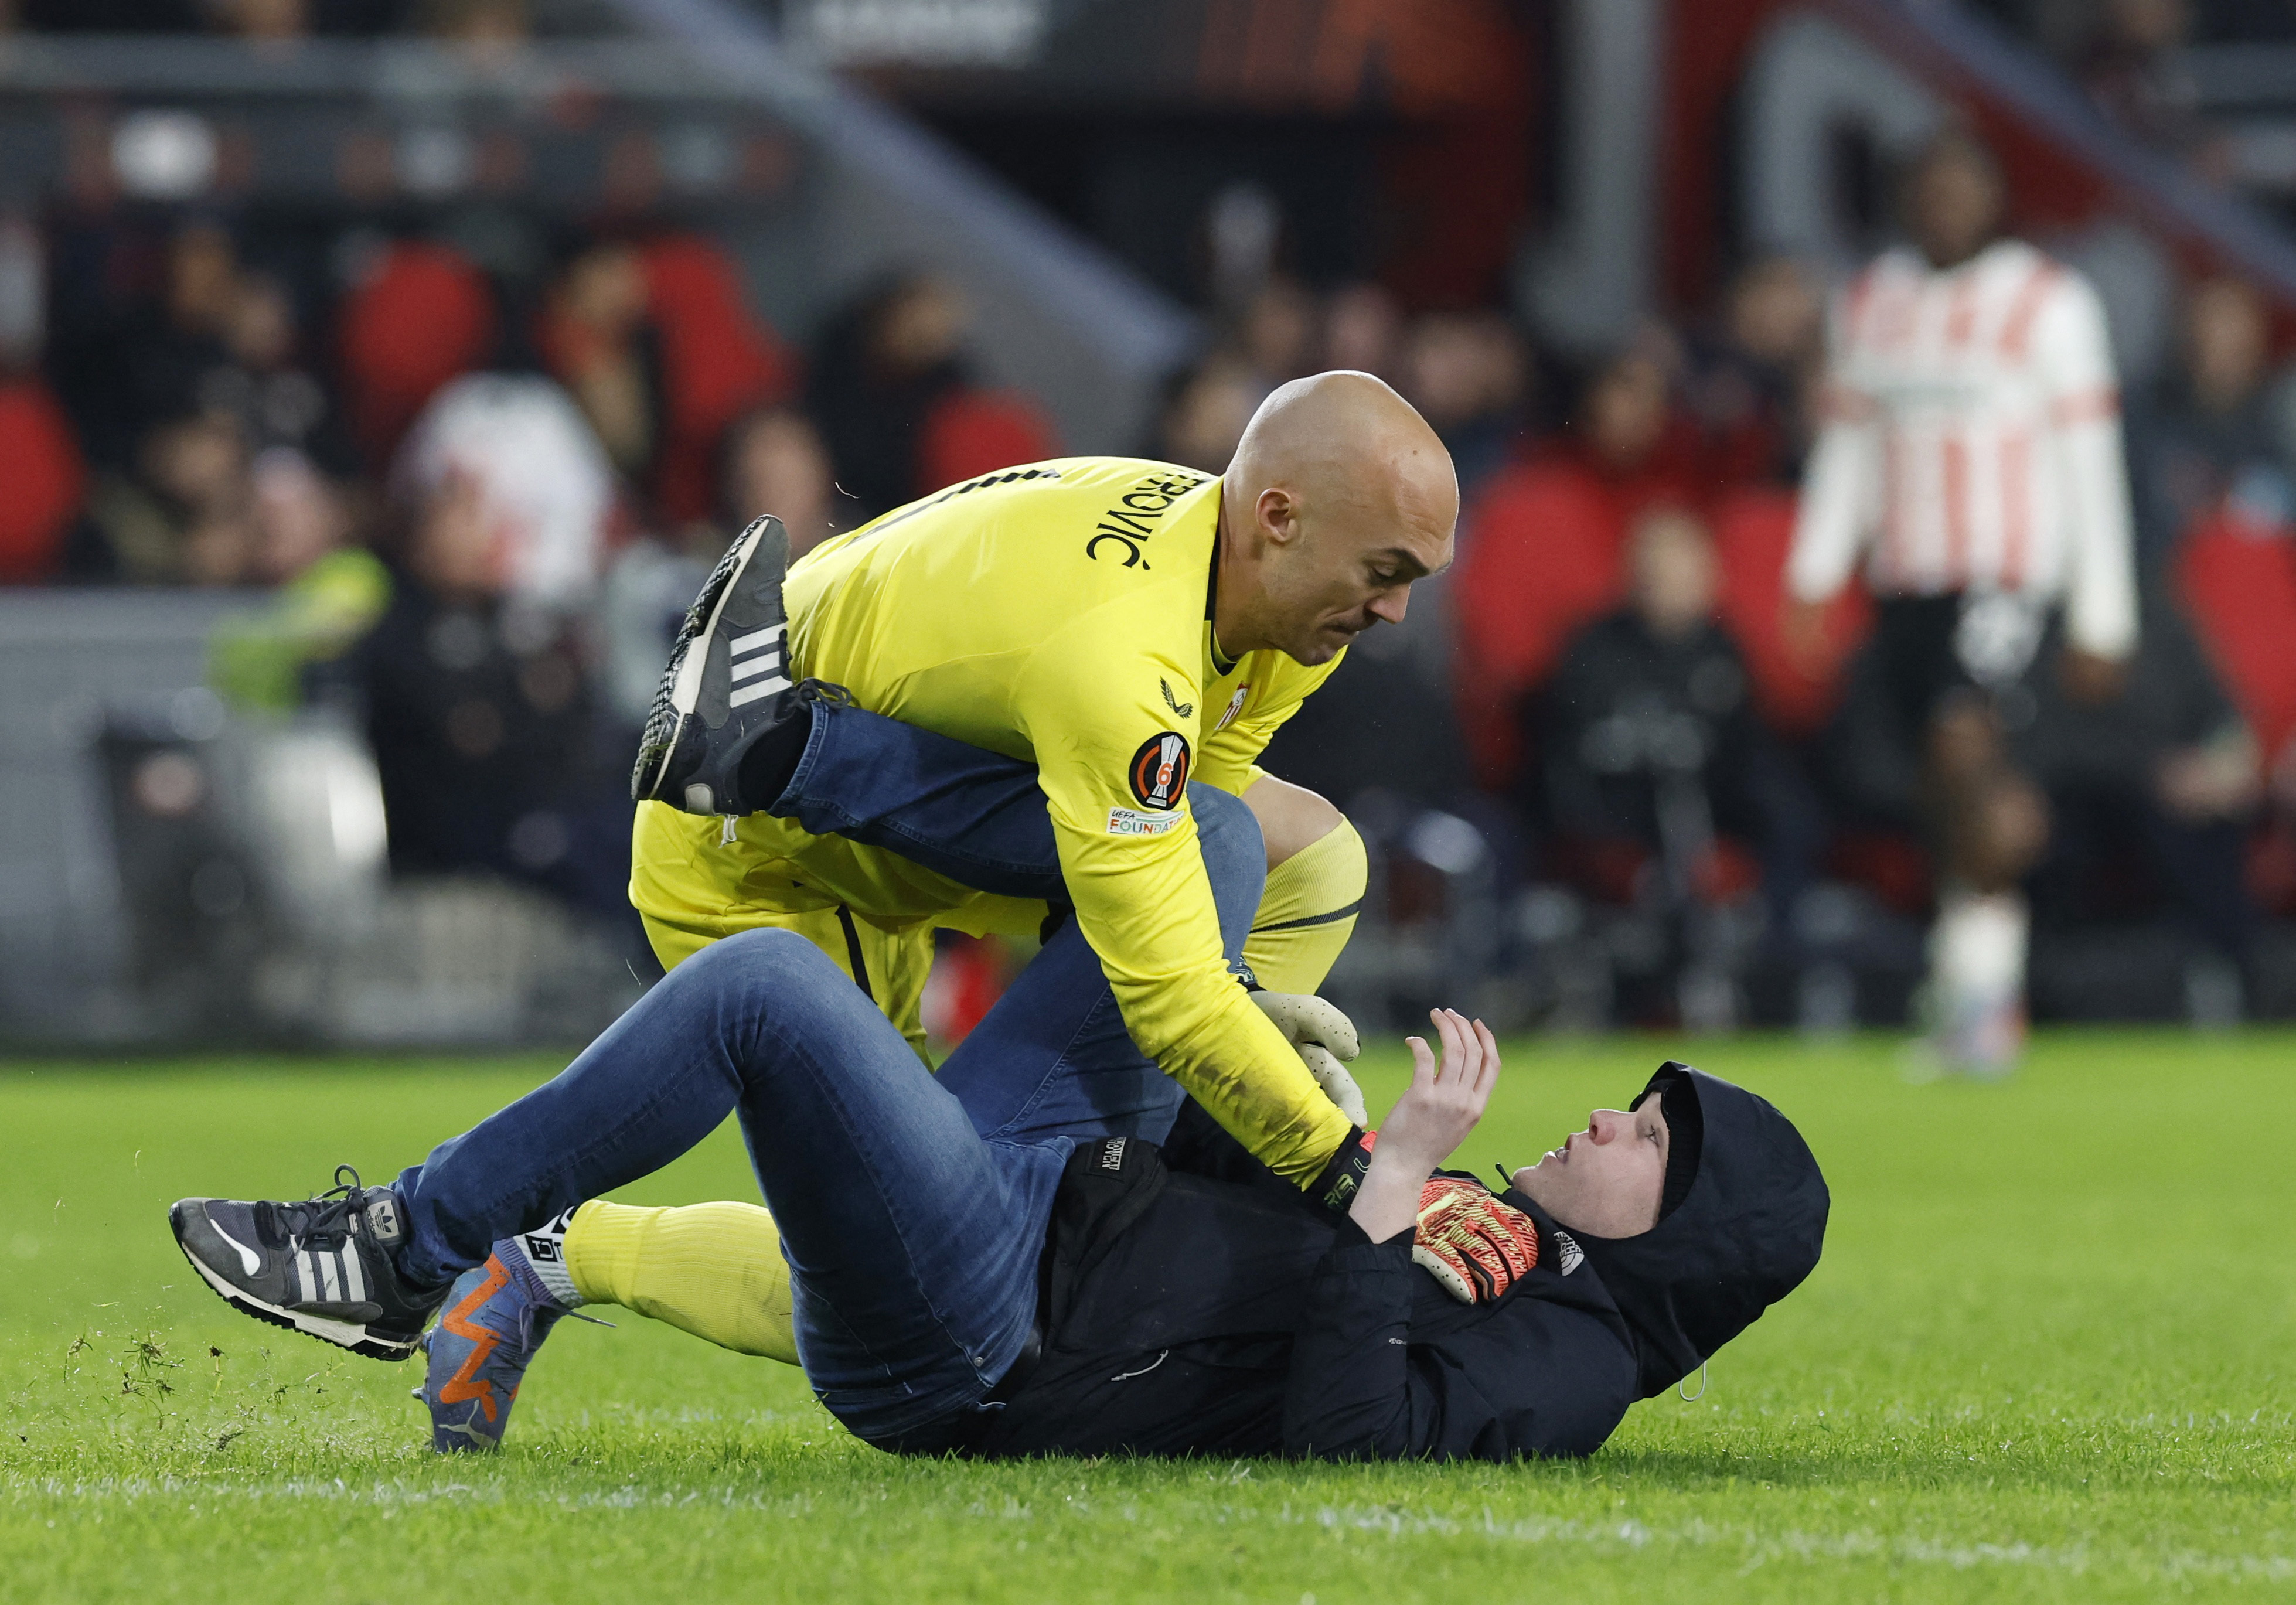 El arquero Marko Dmitrovic tumba al agresor y lo retiene en el suelo durante el partido entre Sevilla y PSV en Eindhoven (REUTERS/Piroschka Van De Wouw)